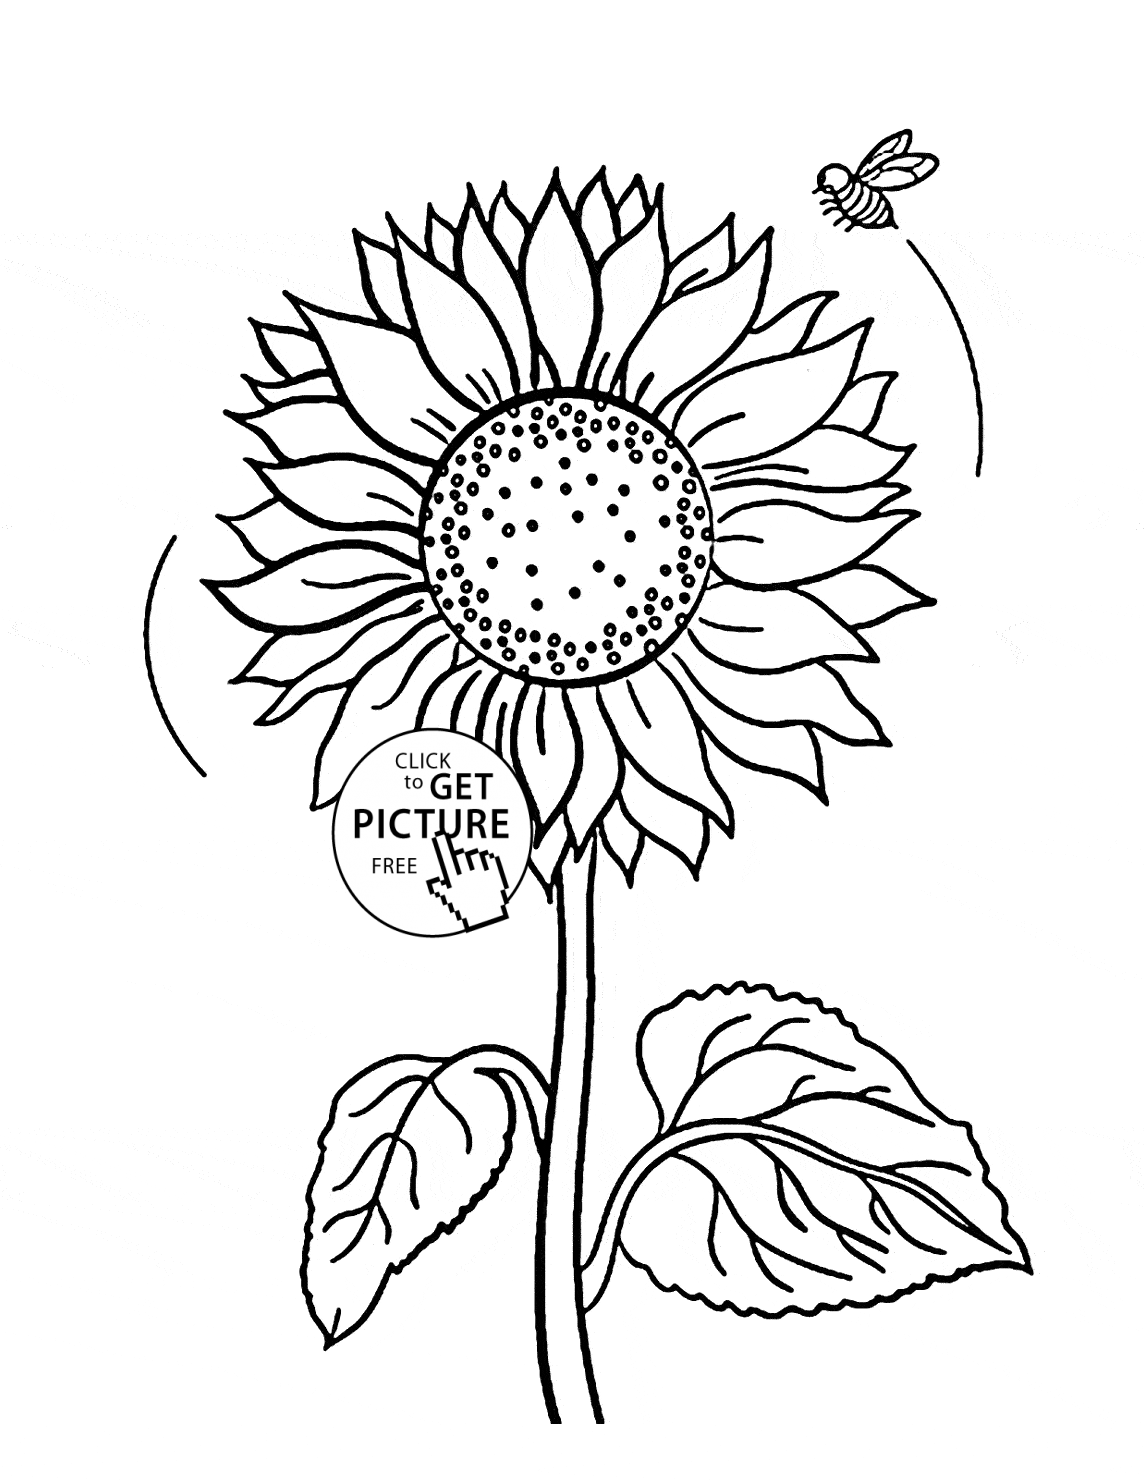 sunflower doodle